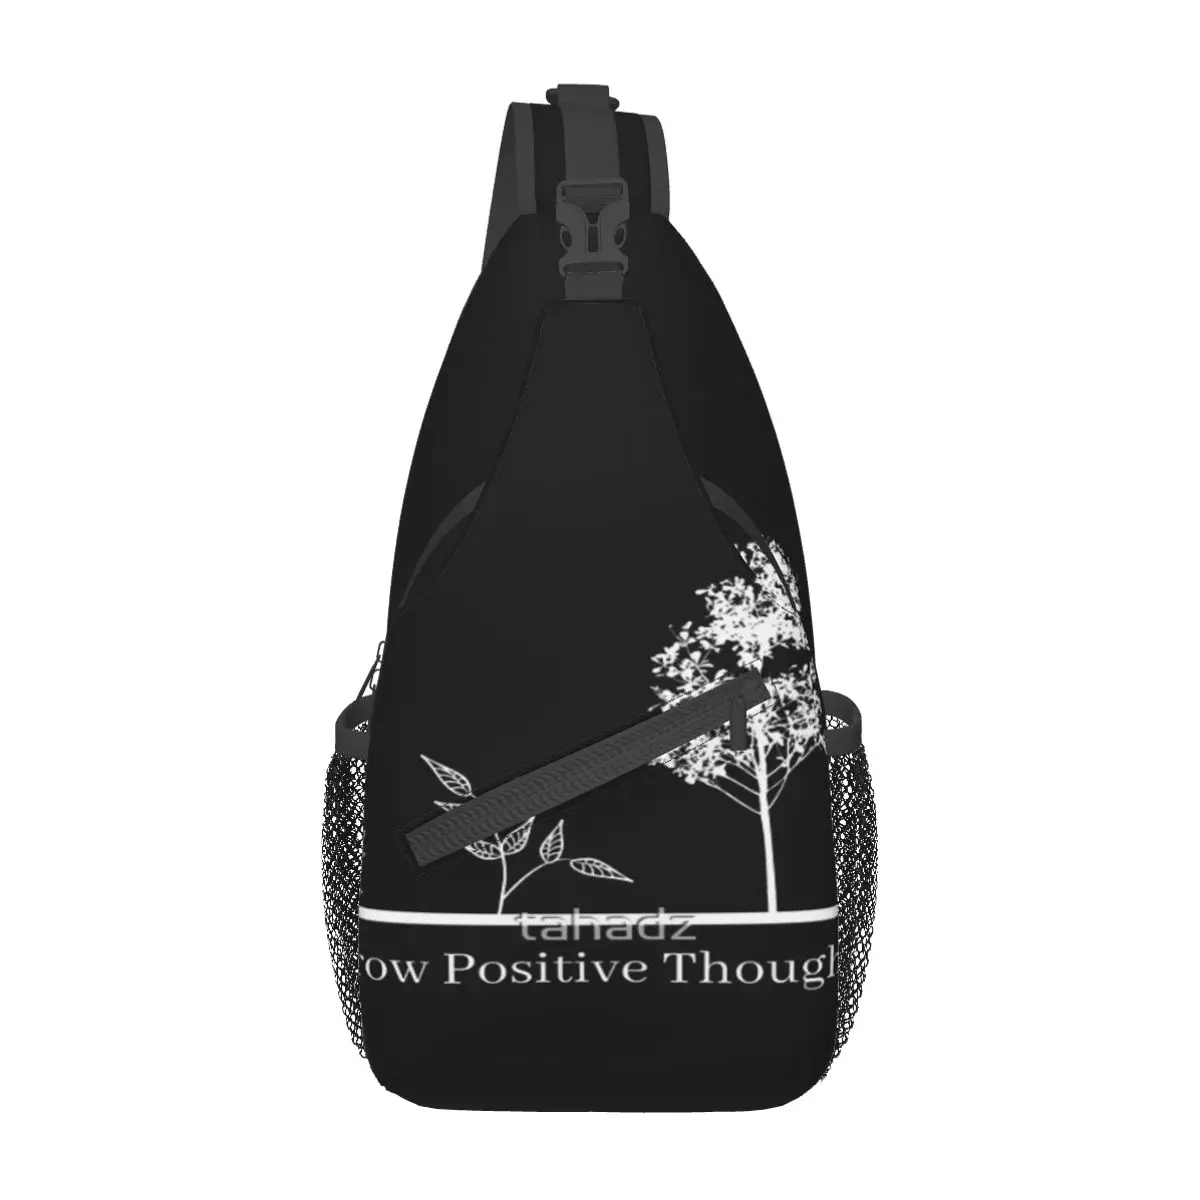 

Нагрудная сумка с позитивными мыслями, модная, из полиэстерной ткани, для путешествий, хороший подарок на заказ